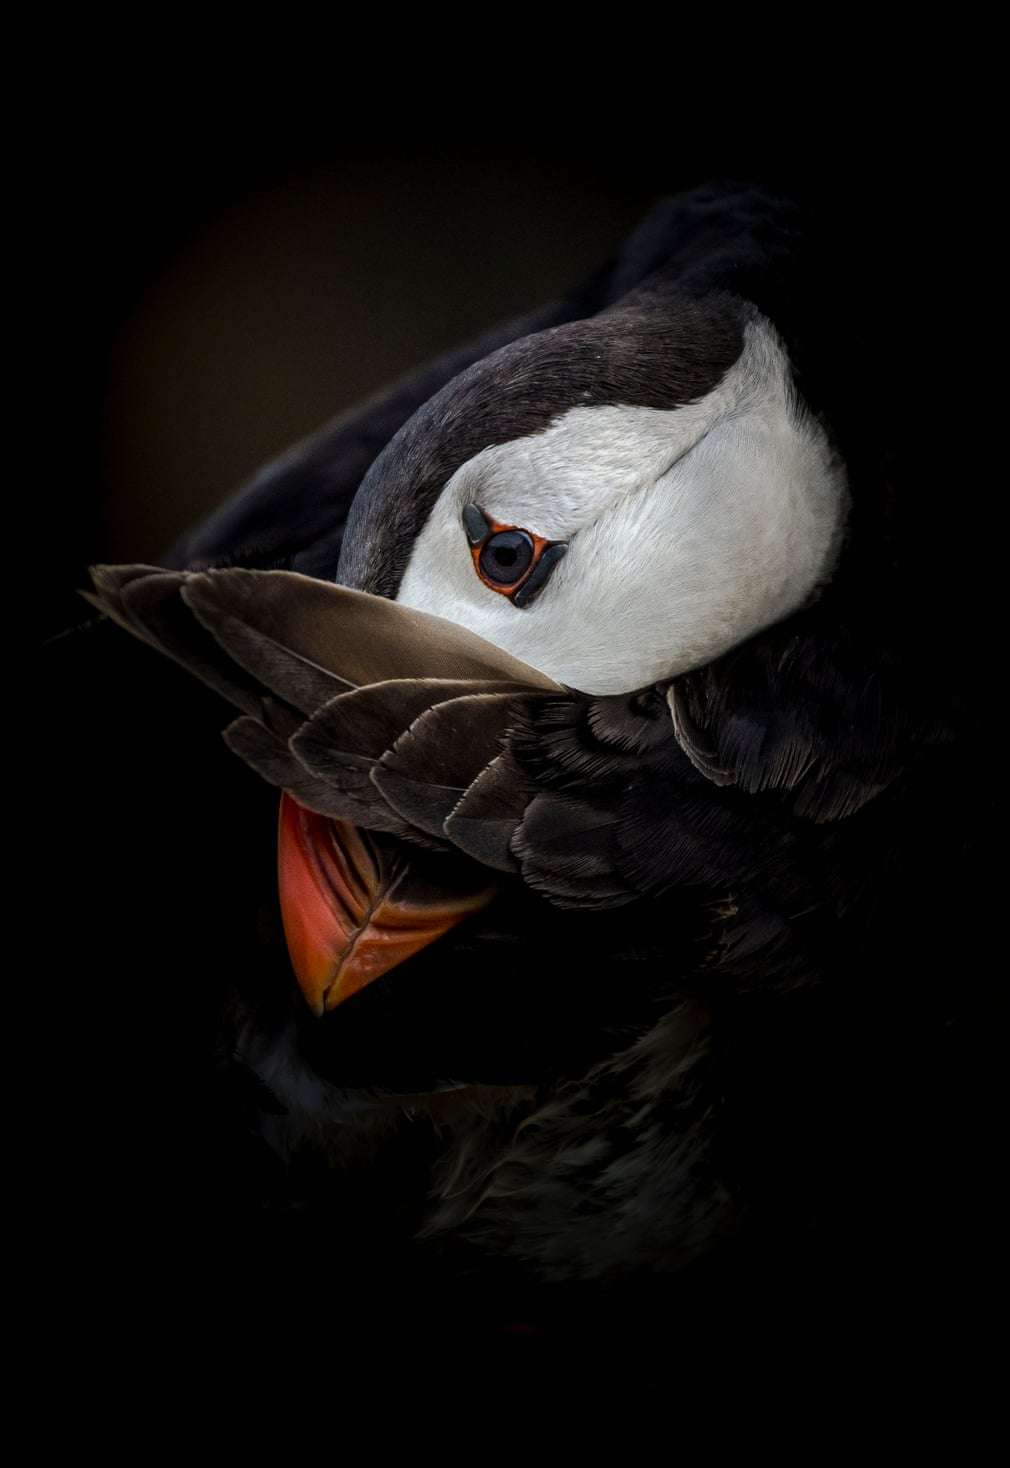 British Wildlife Photography Awards показав найкращі фотографії природи за 10 років - фото 492769